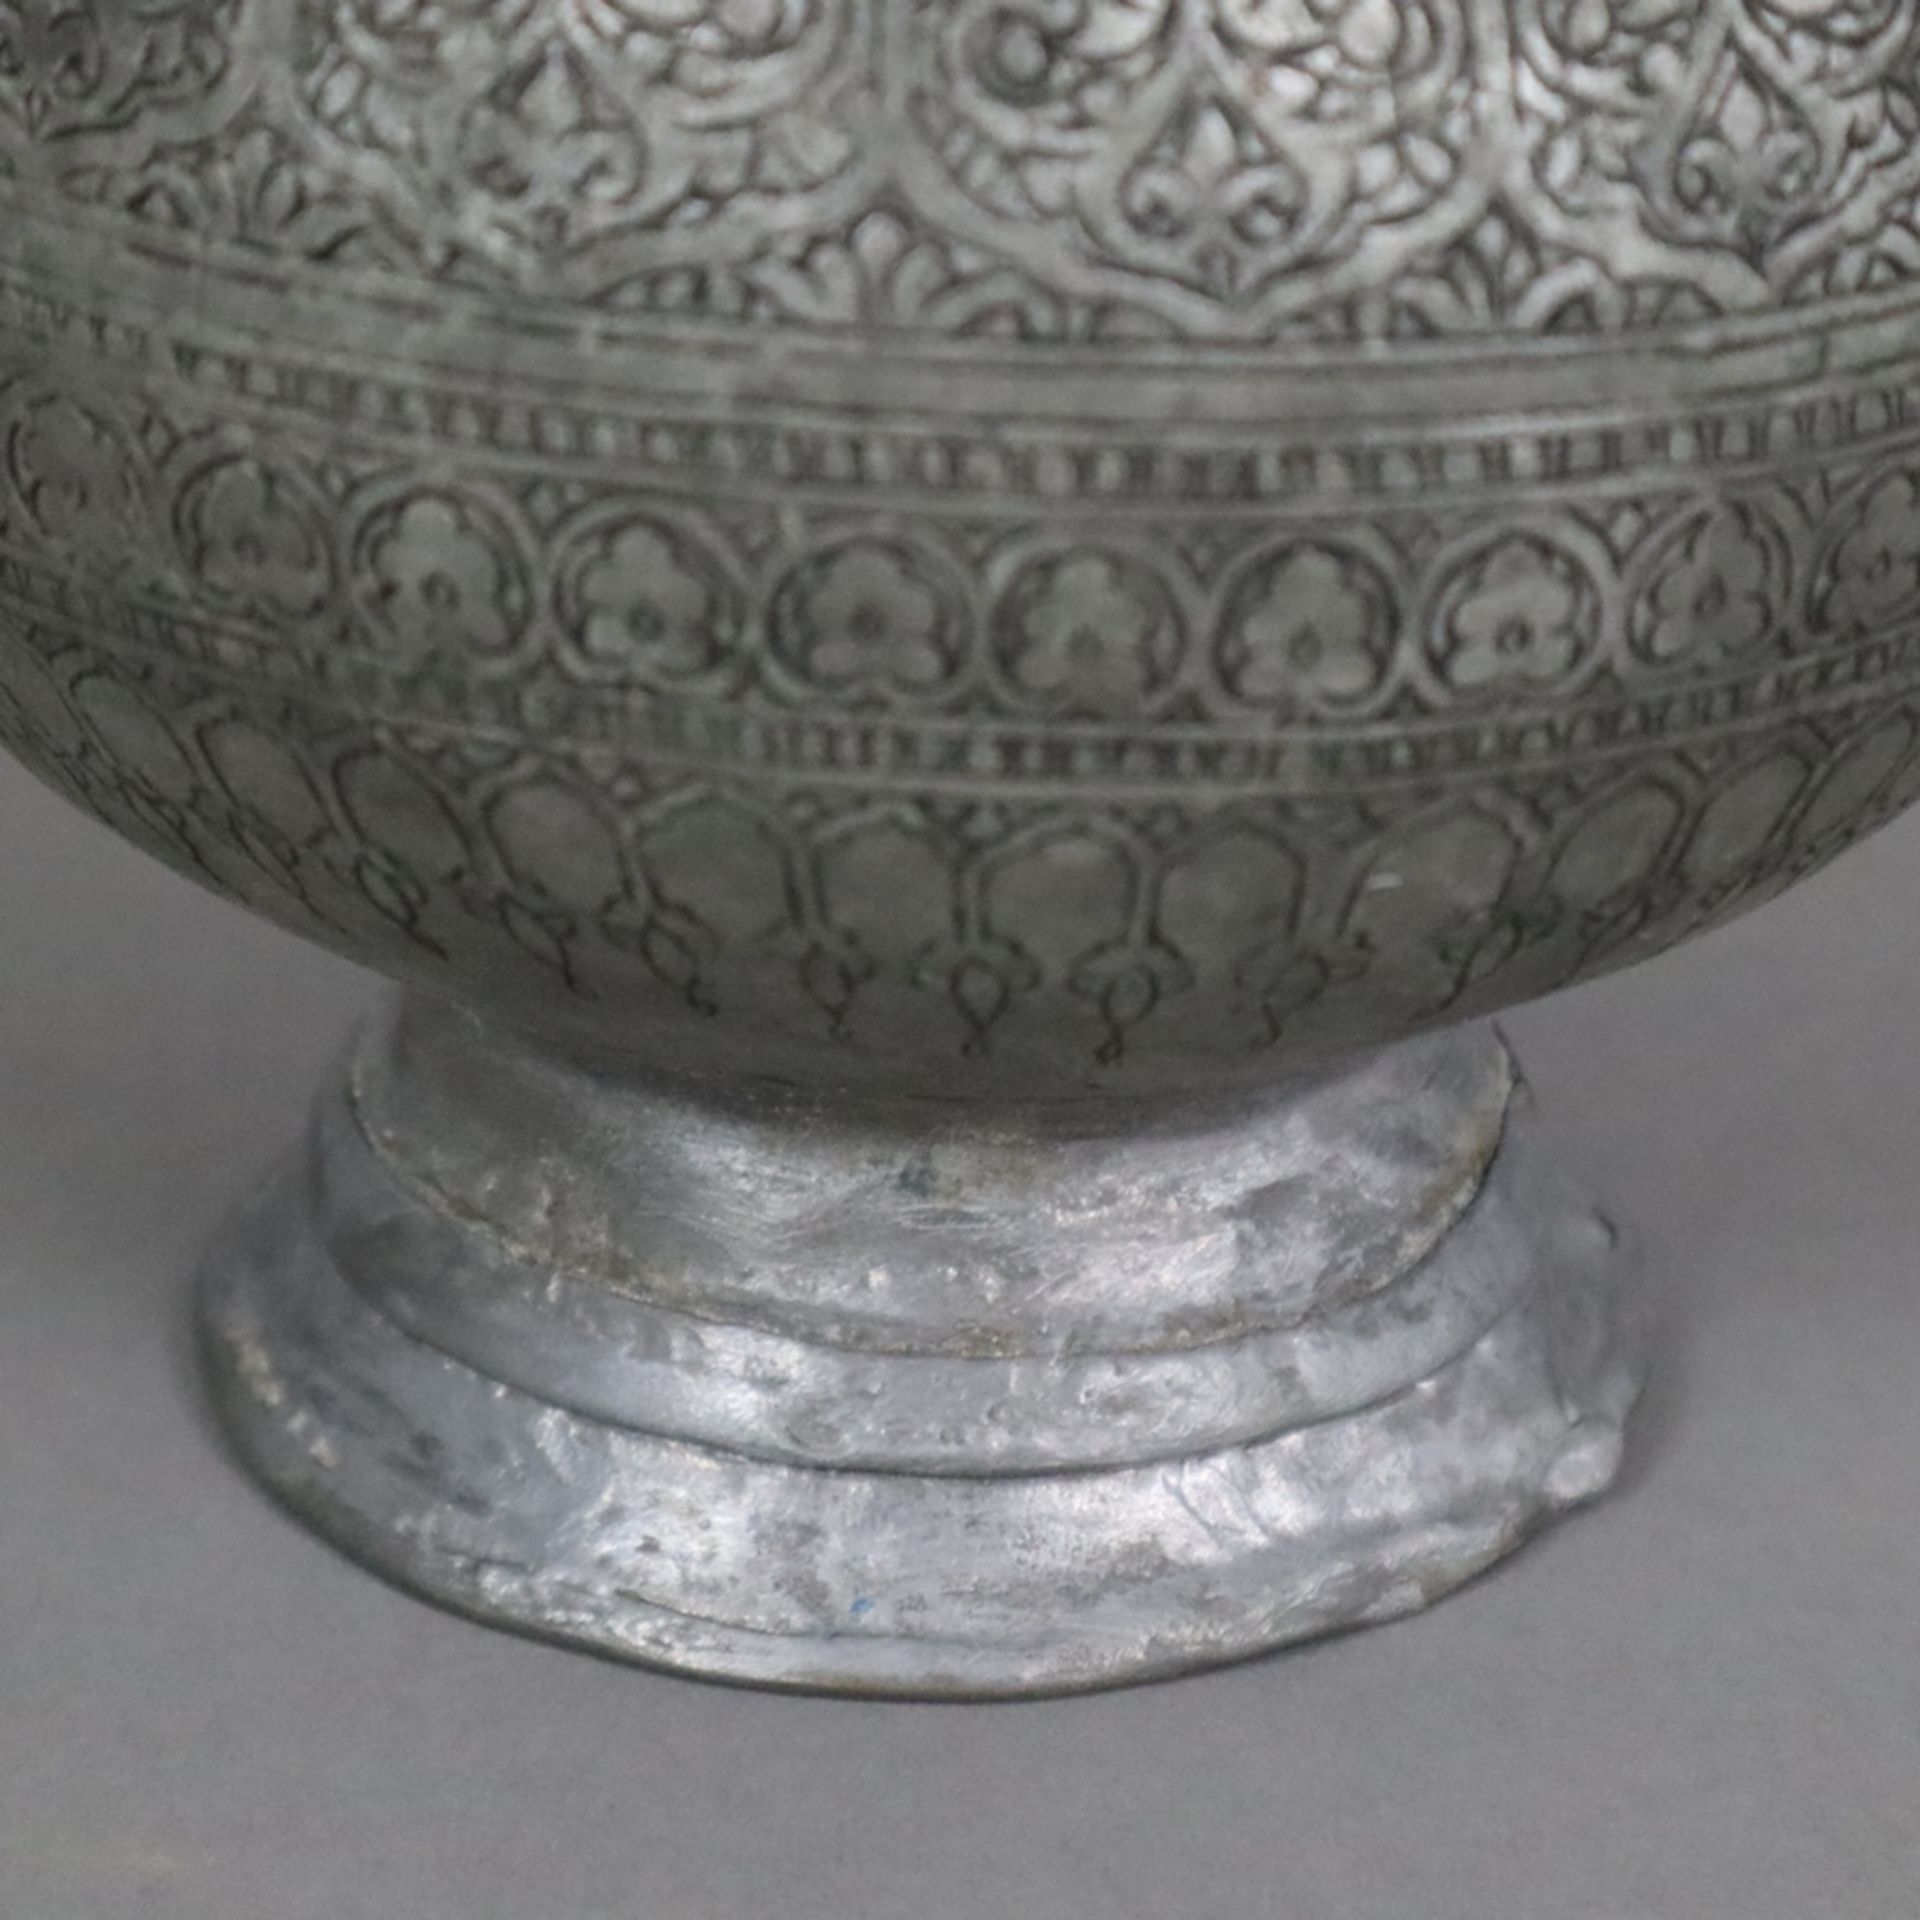 Vase - indopersisch, Kupfer versilbert / verzinnt?, birnförmige Vasenform am Hals durch Ringe gegli - Image 8 of 9